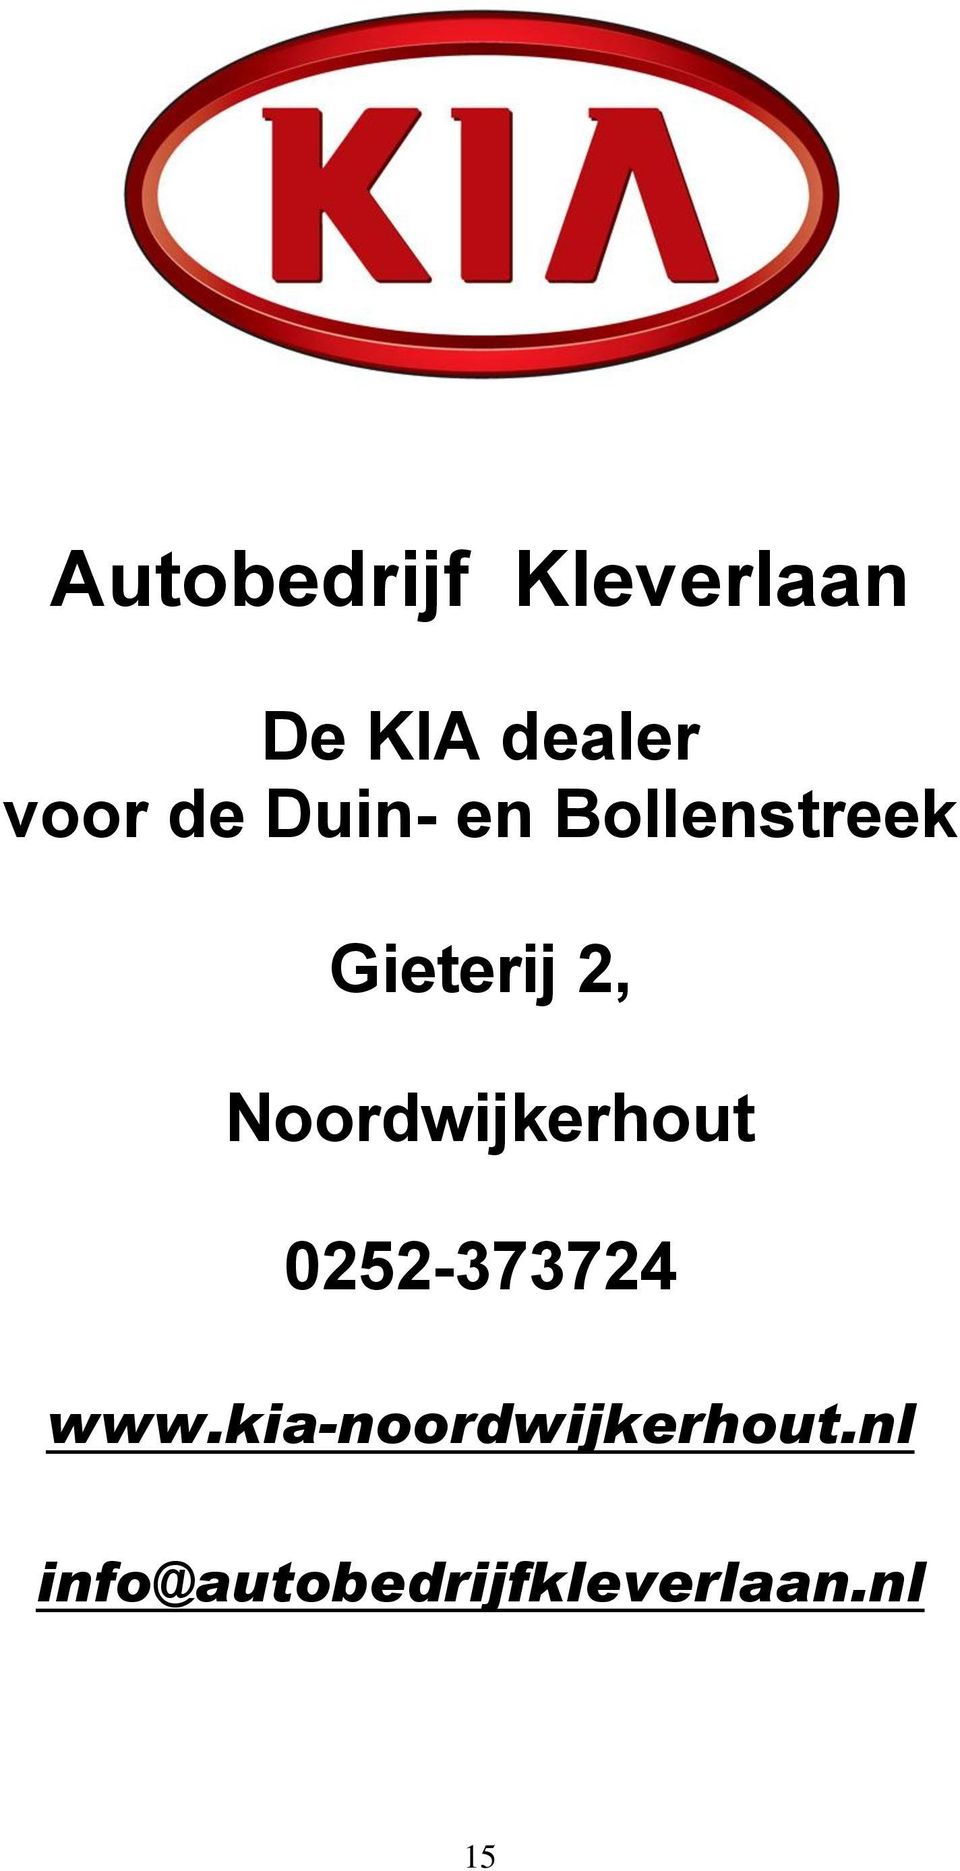 Noordwijkerhout 0252-373724 www.